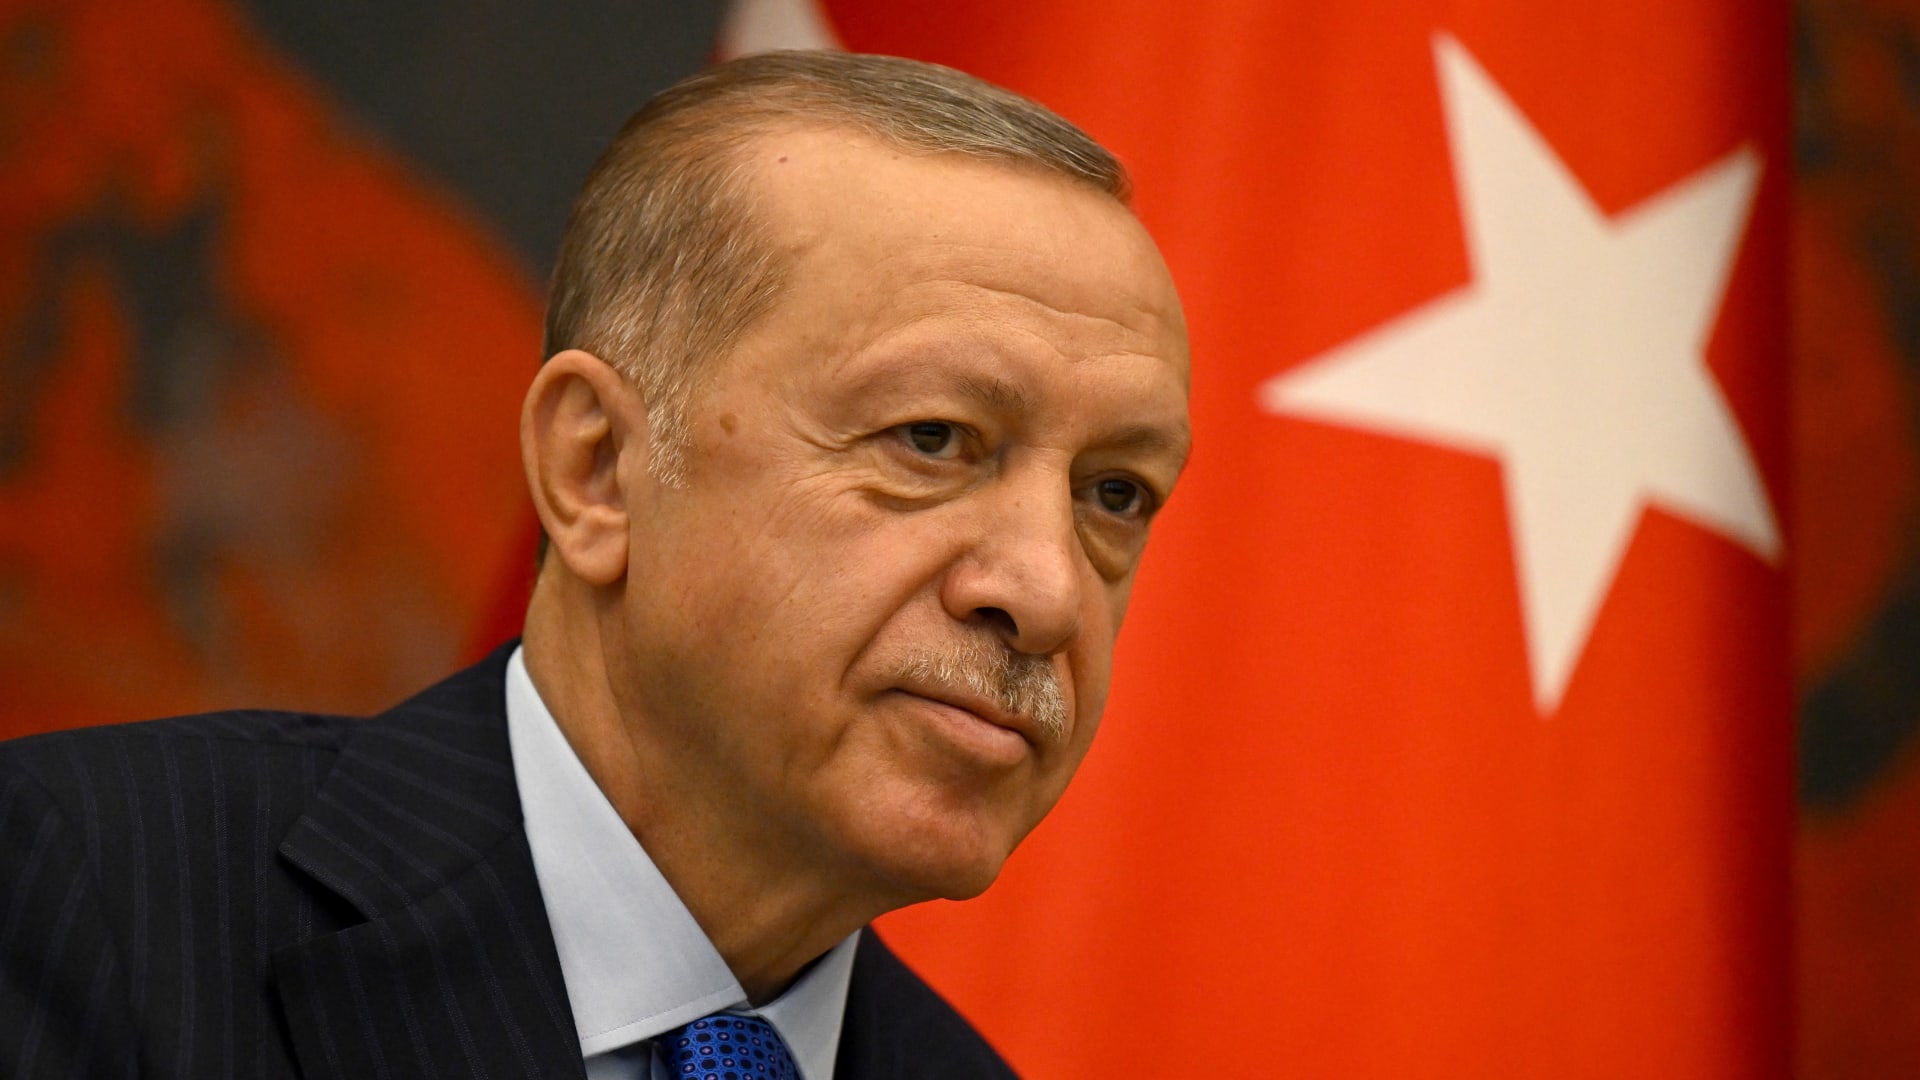 أردوغان يتصل بالبرهان و"حميدتي".. والرئاسة التركية: "دعا للحد من إراقة دماء الإخوة"